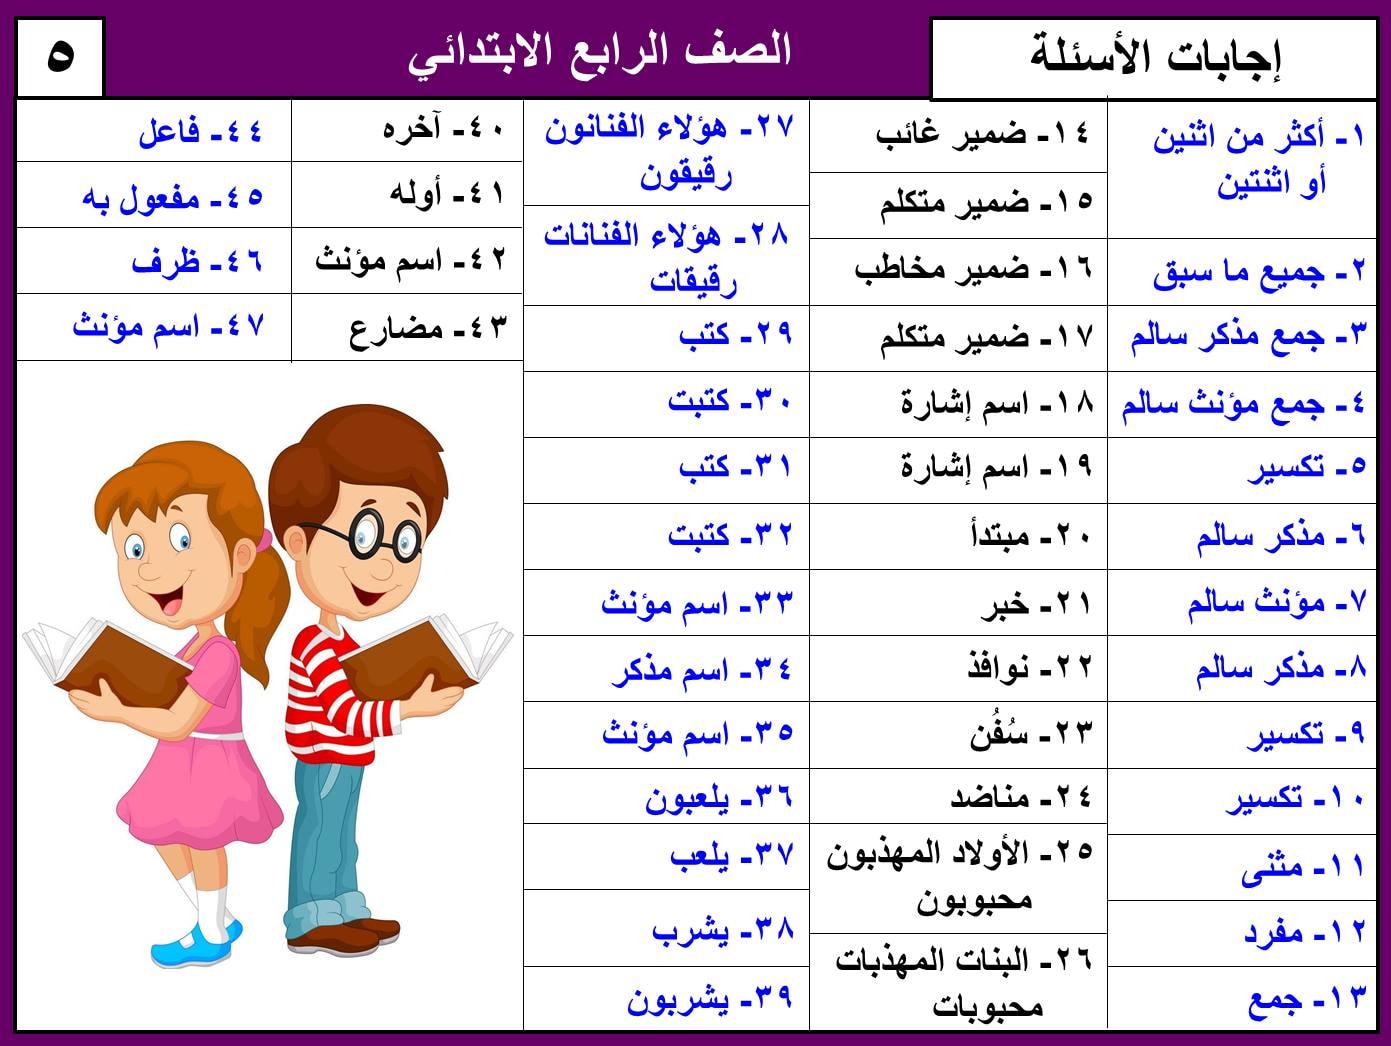 نماذج امتحان لغة عربية منهج ابريل الصف الرابع الابتدائي ترم ثاني بالاجابات 11